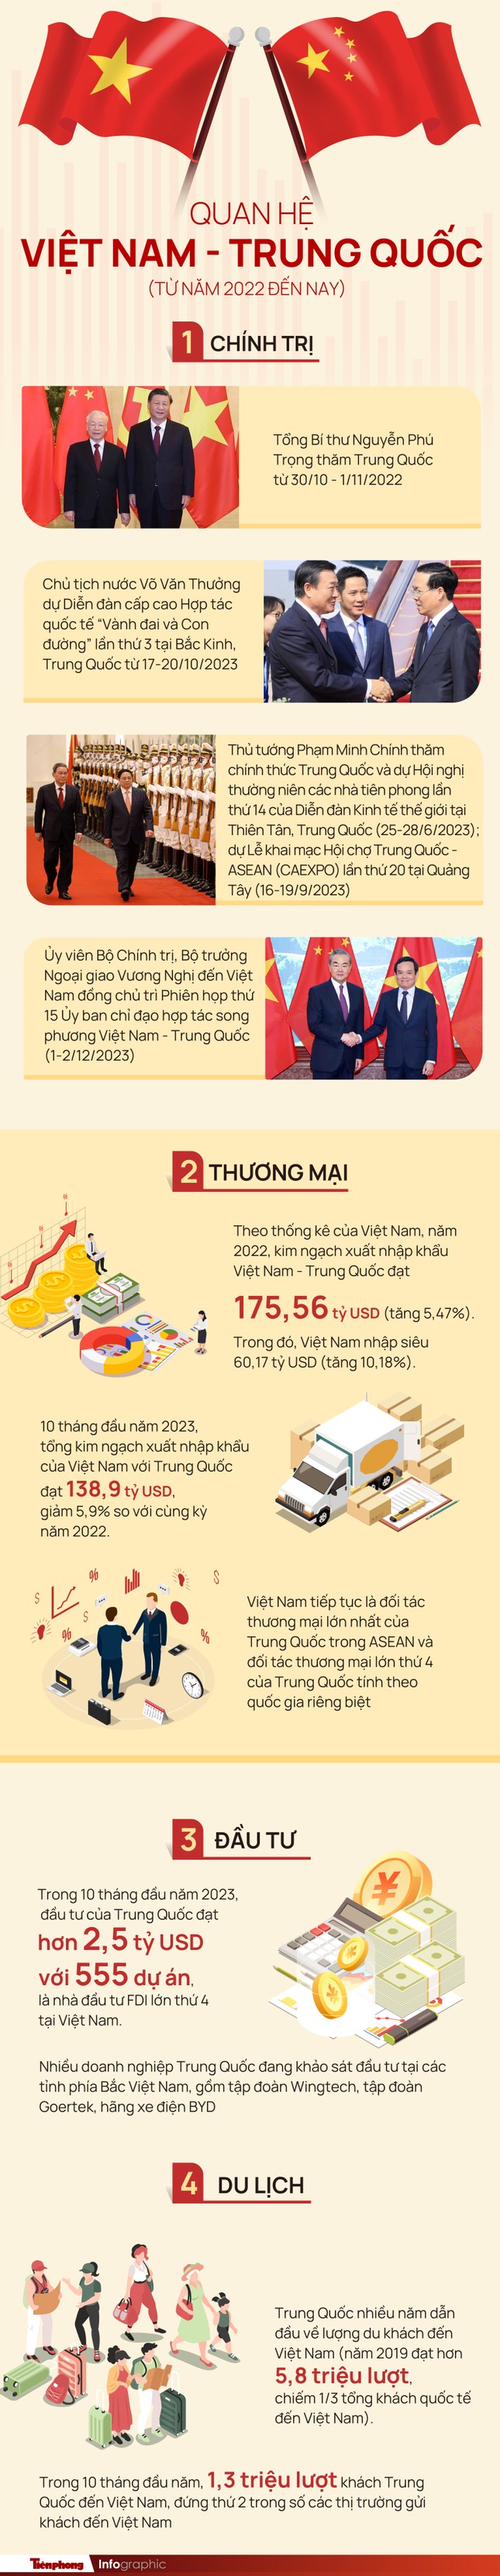 Thông điệp từ chuyến thăm Việt Nam của Tổng Bí thư, Chủ tịch Trung Quốc Tập Cận Bình ảnh 2